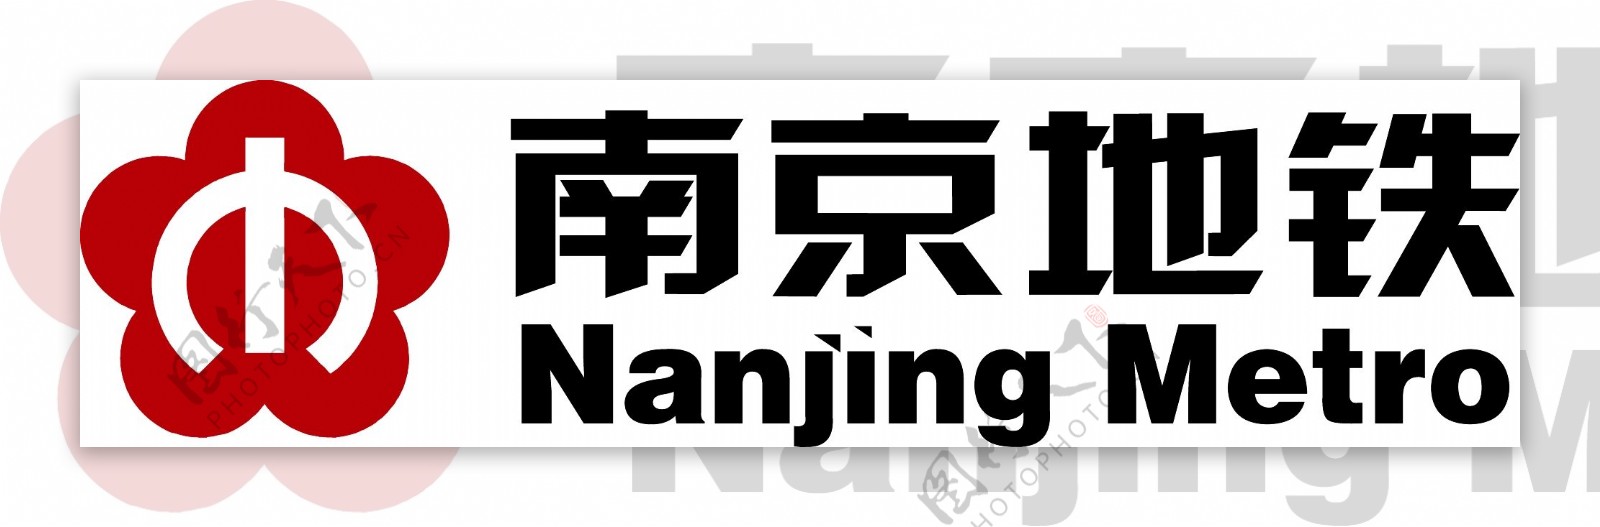 南京地铁标志Logo